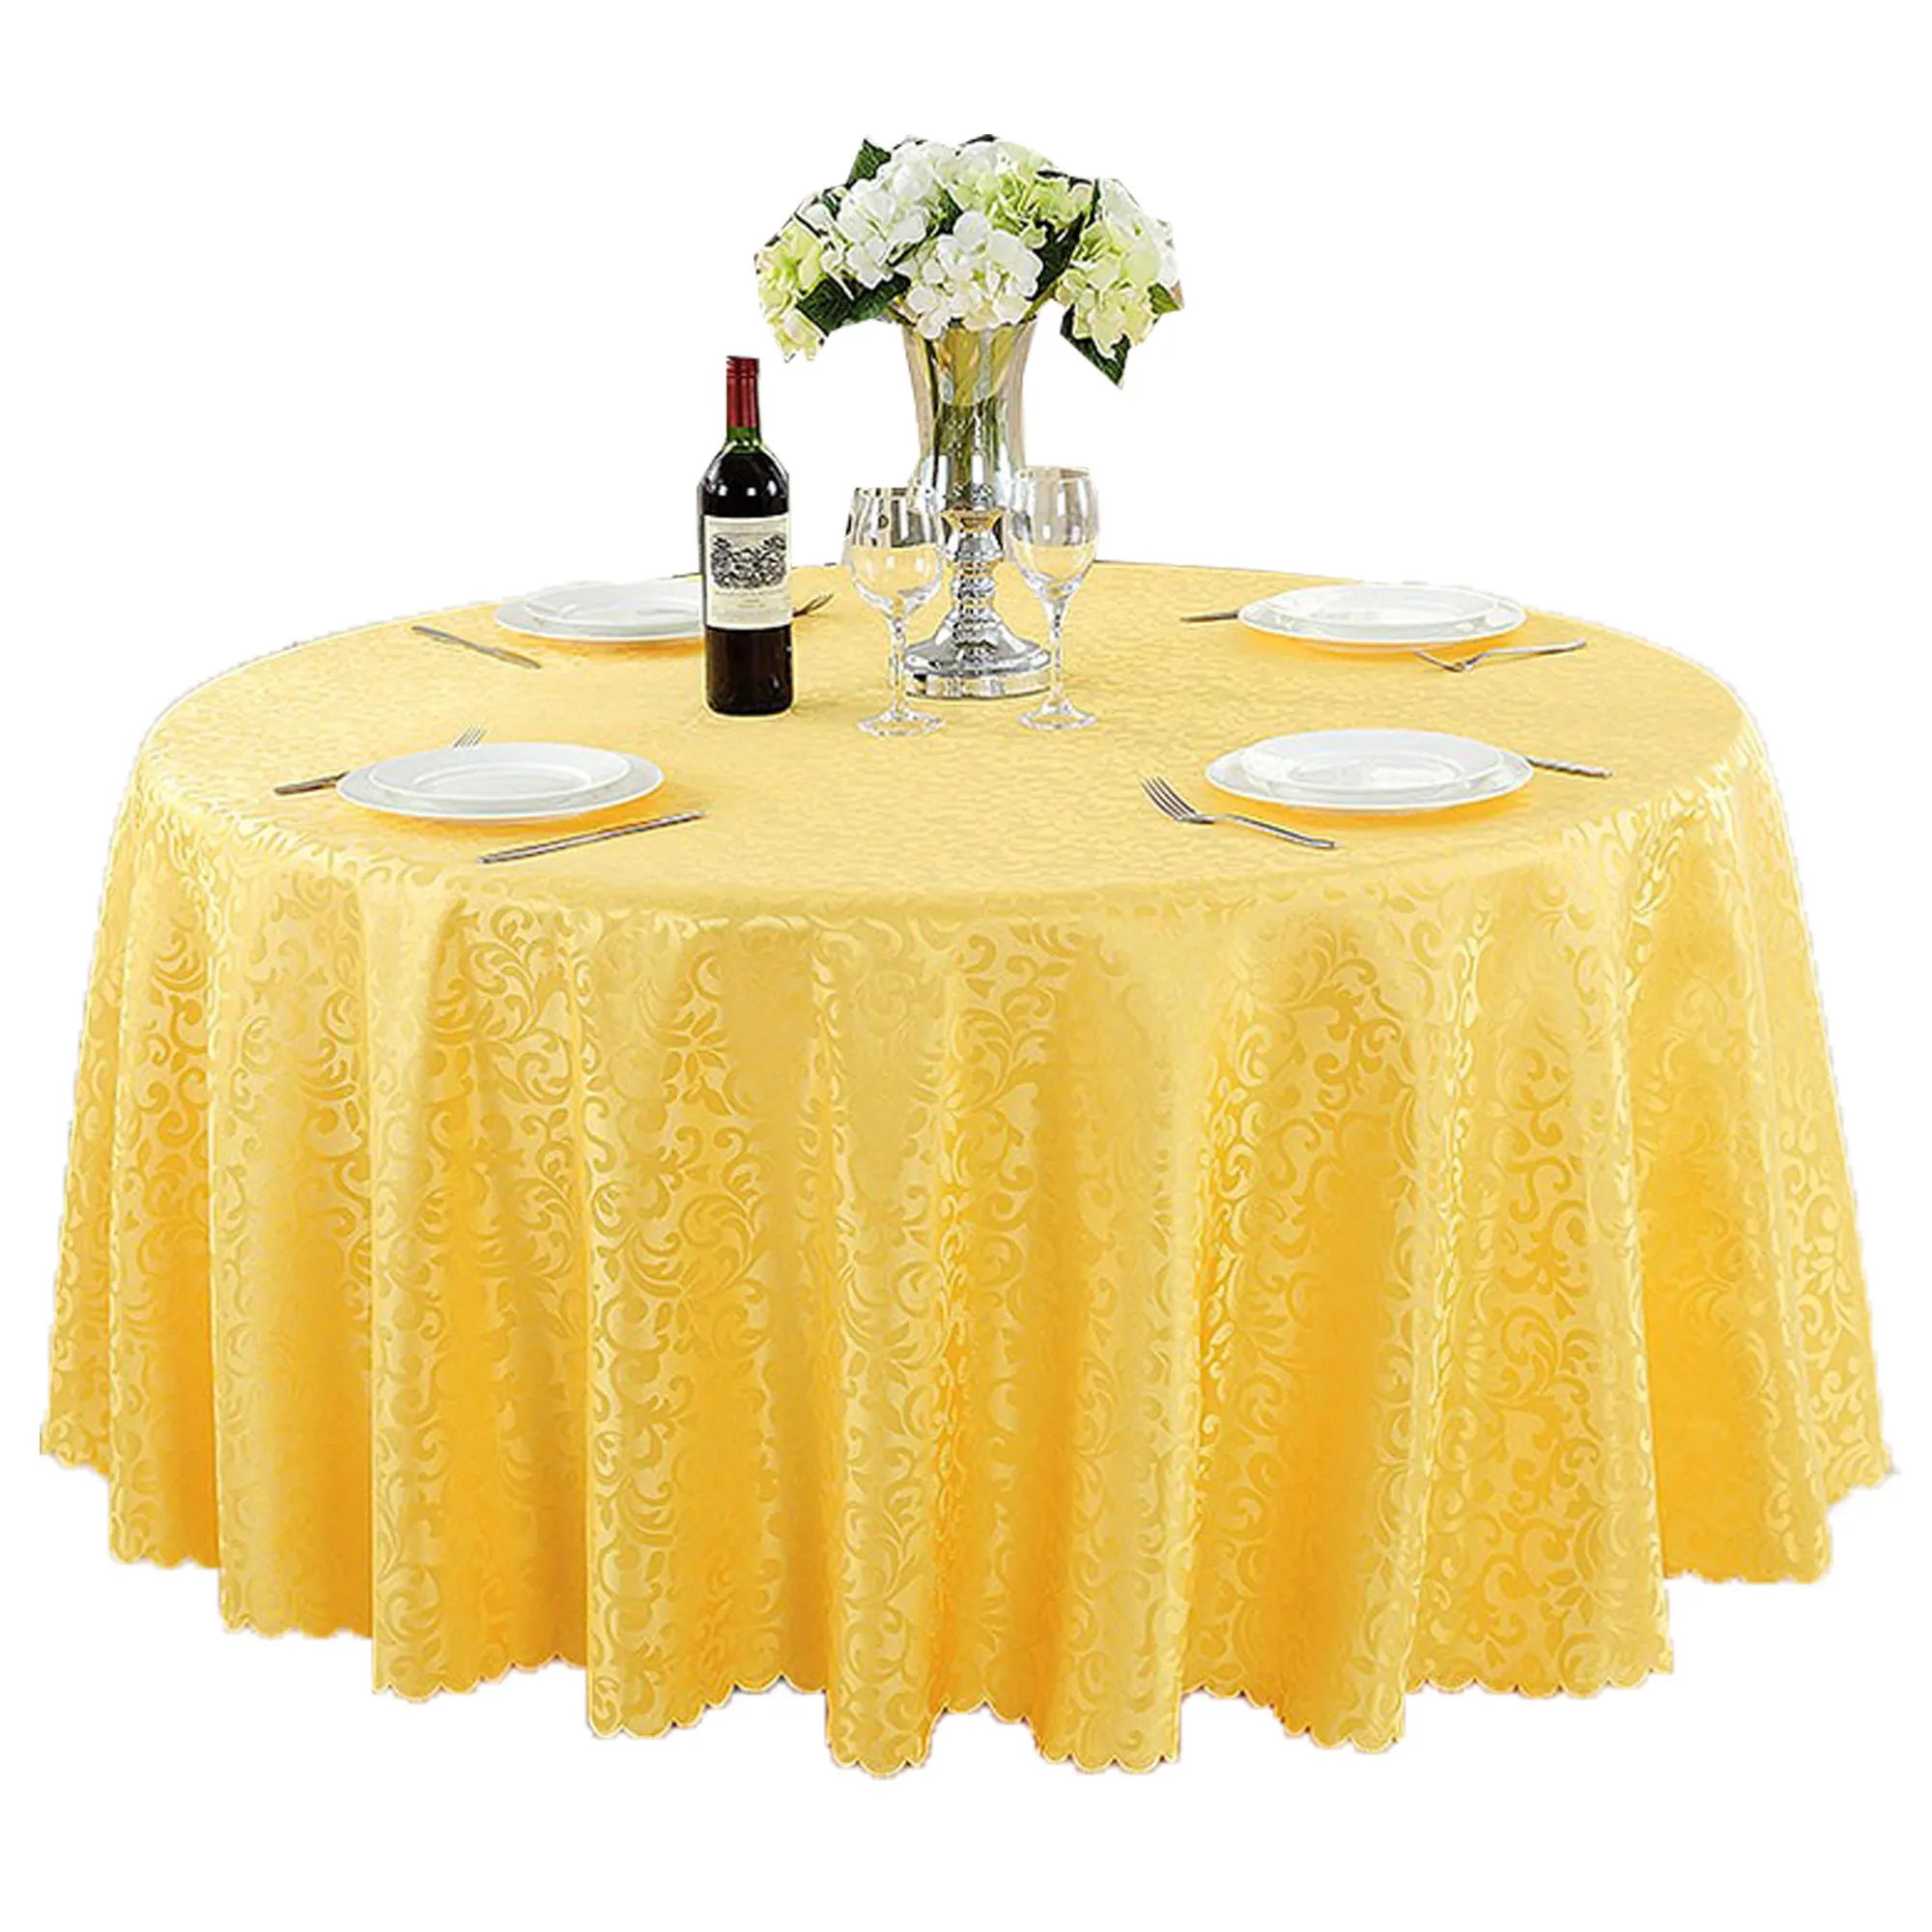 Barato banquete de poliéster redondo casamento hotel mesa de pano capa de mesa